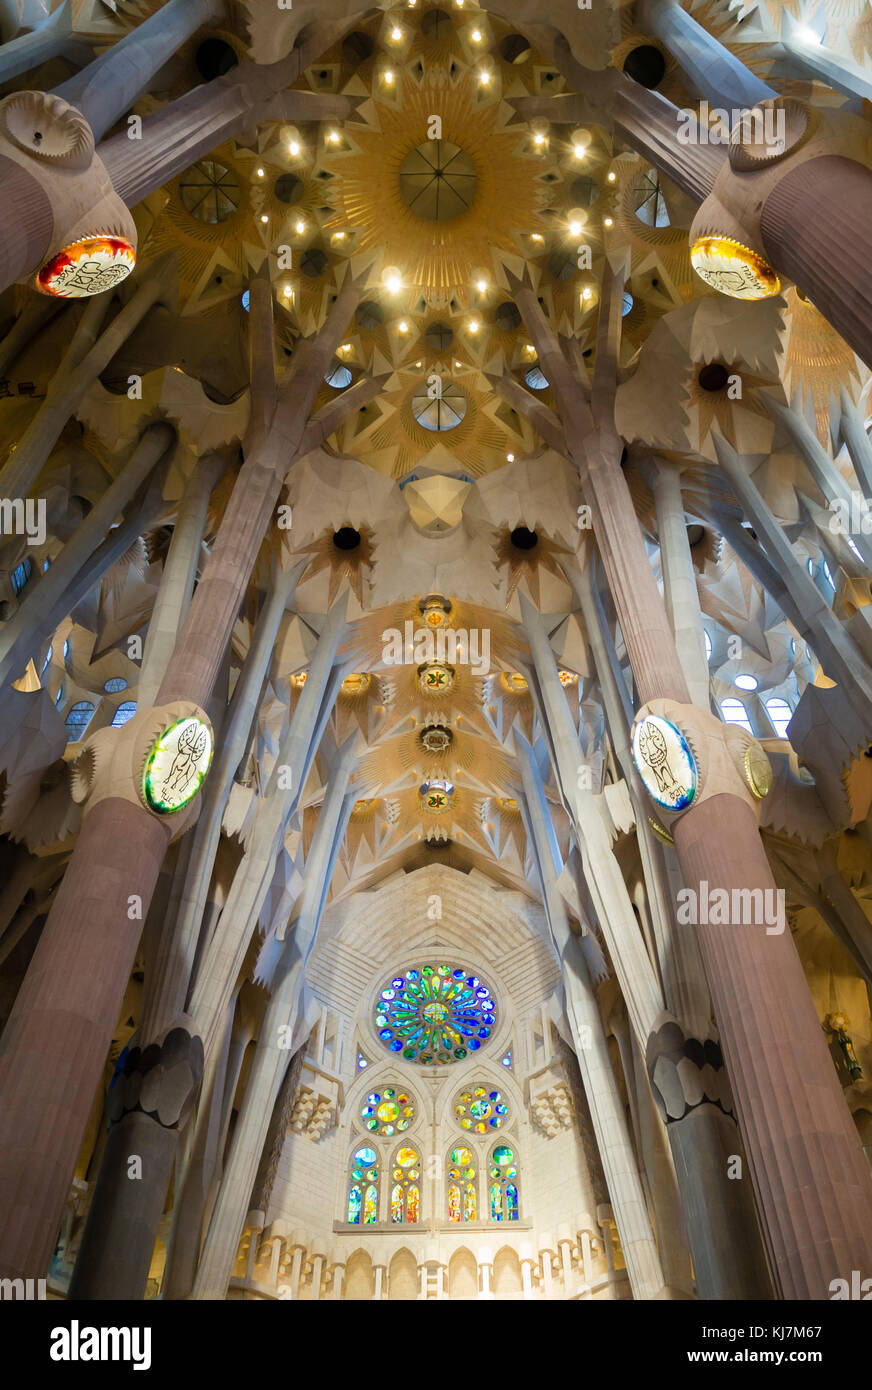 Barcelona, Spain - 11 Nov 2016: Spectacular interior of Barcelona's ...